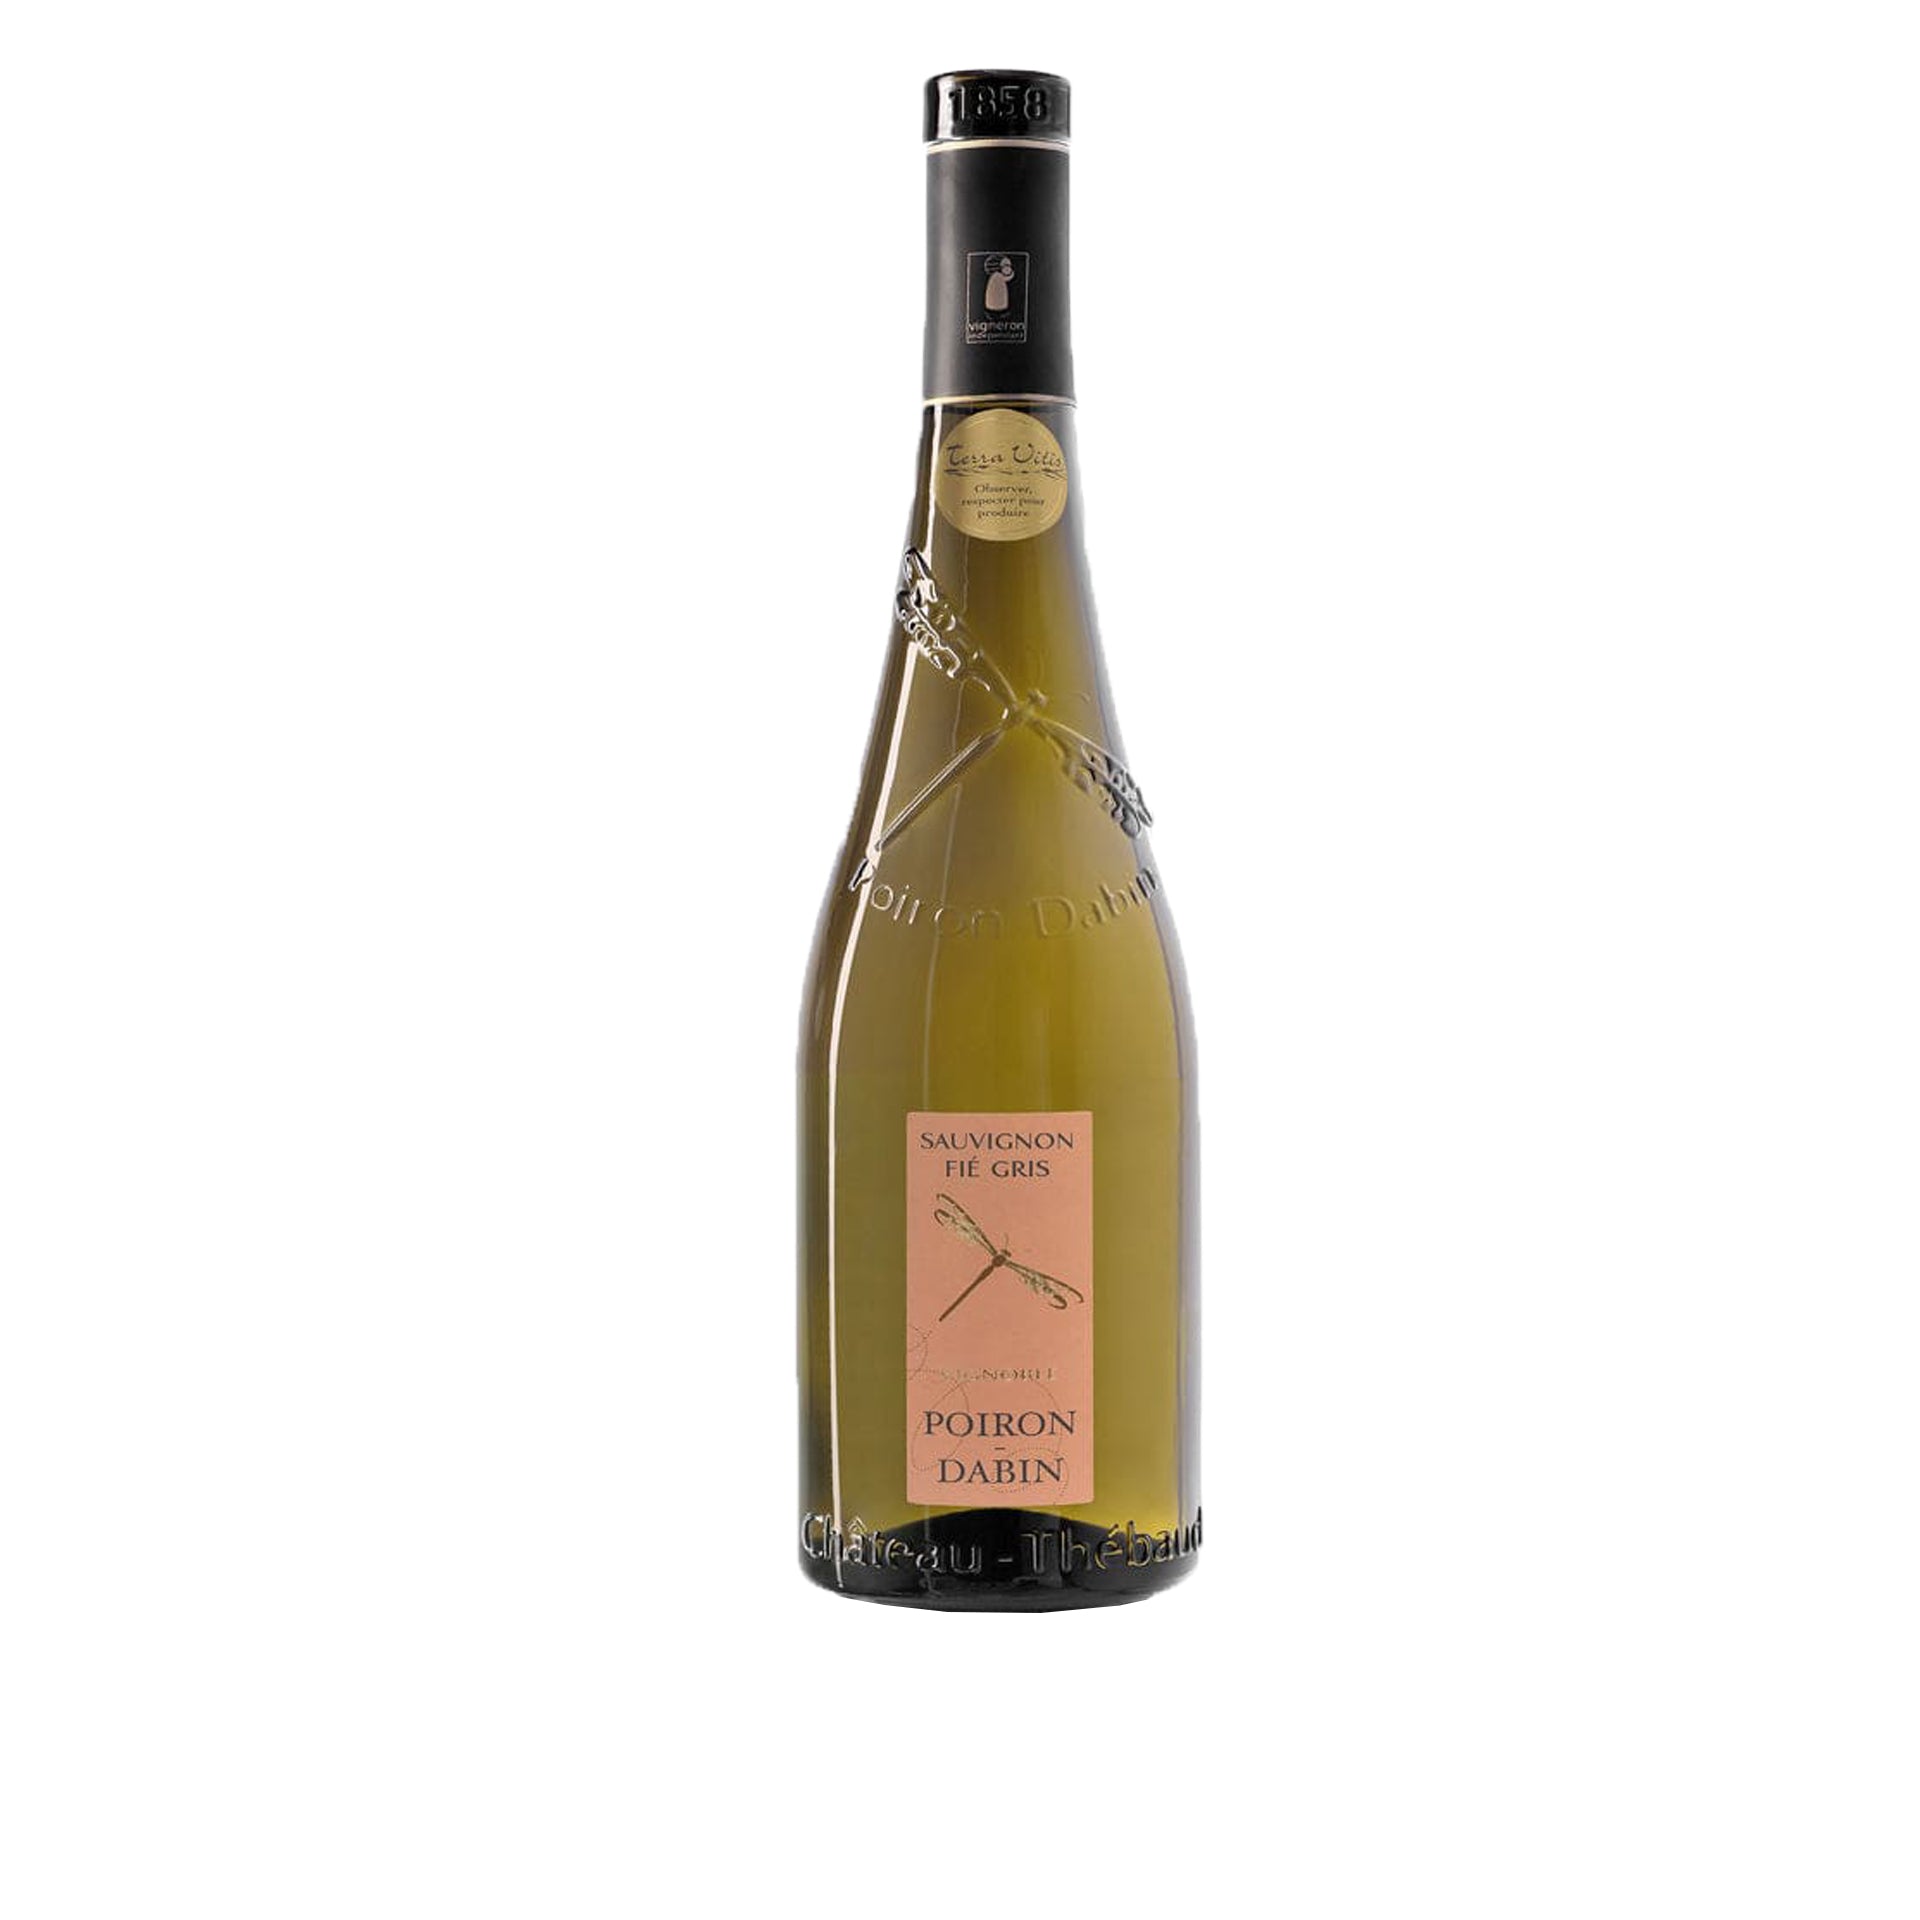 Vin Sauvignon Fié Gris Cuvée 2020 par Poiron Dabin